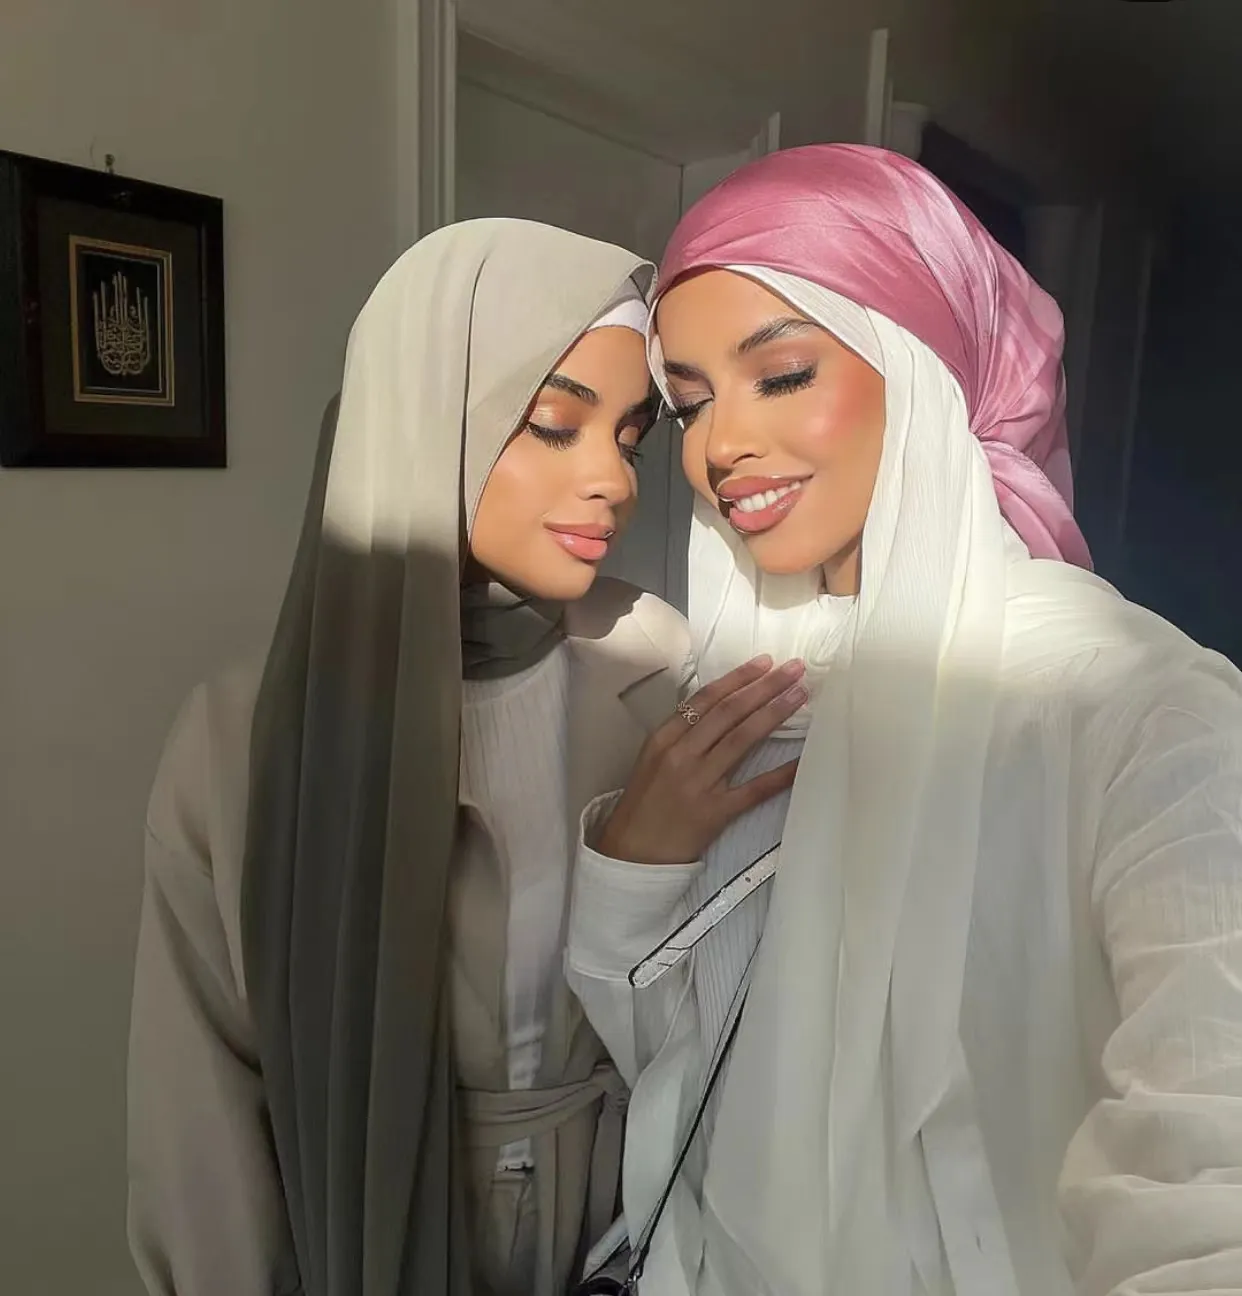 Hijab 모자 공급 업체 도매 패션 여성 이슬람 부드러운 쉬폰 일반 저지 코튼 Hijab 스카프 민족 스카프